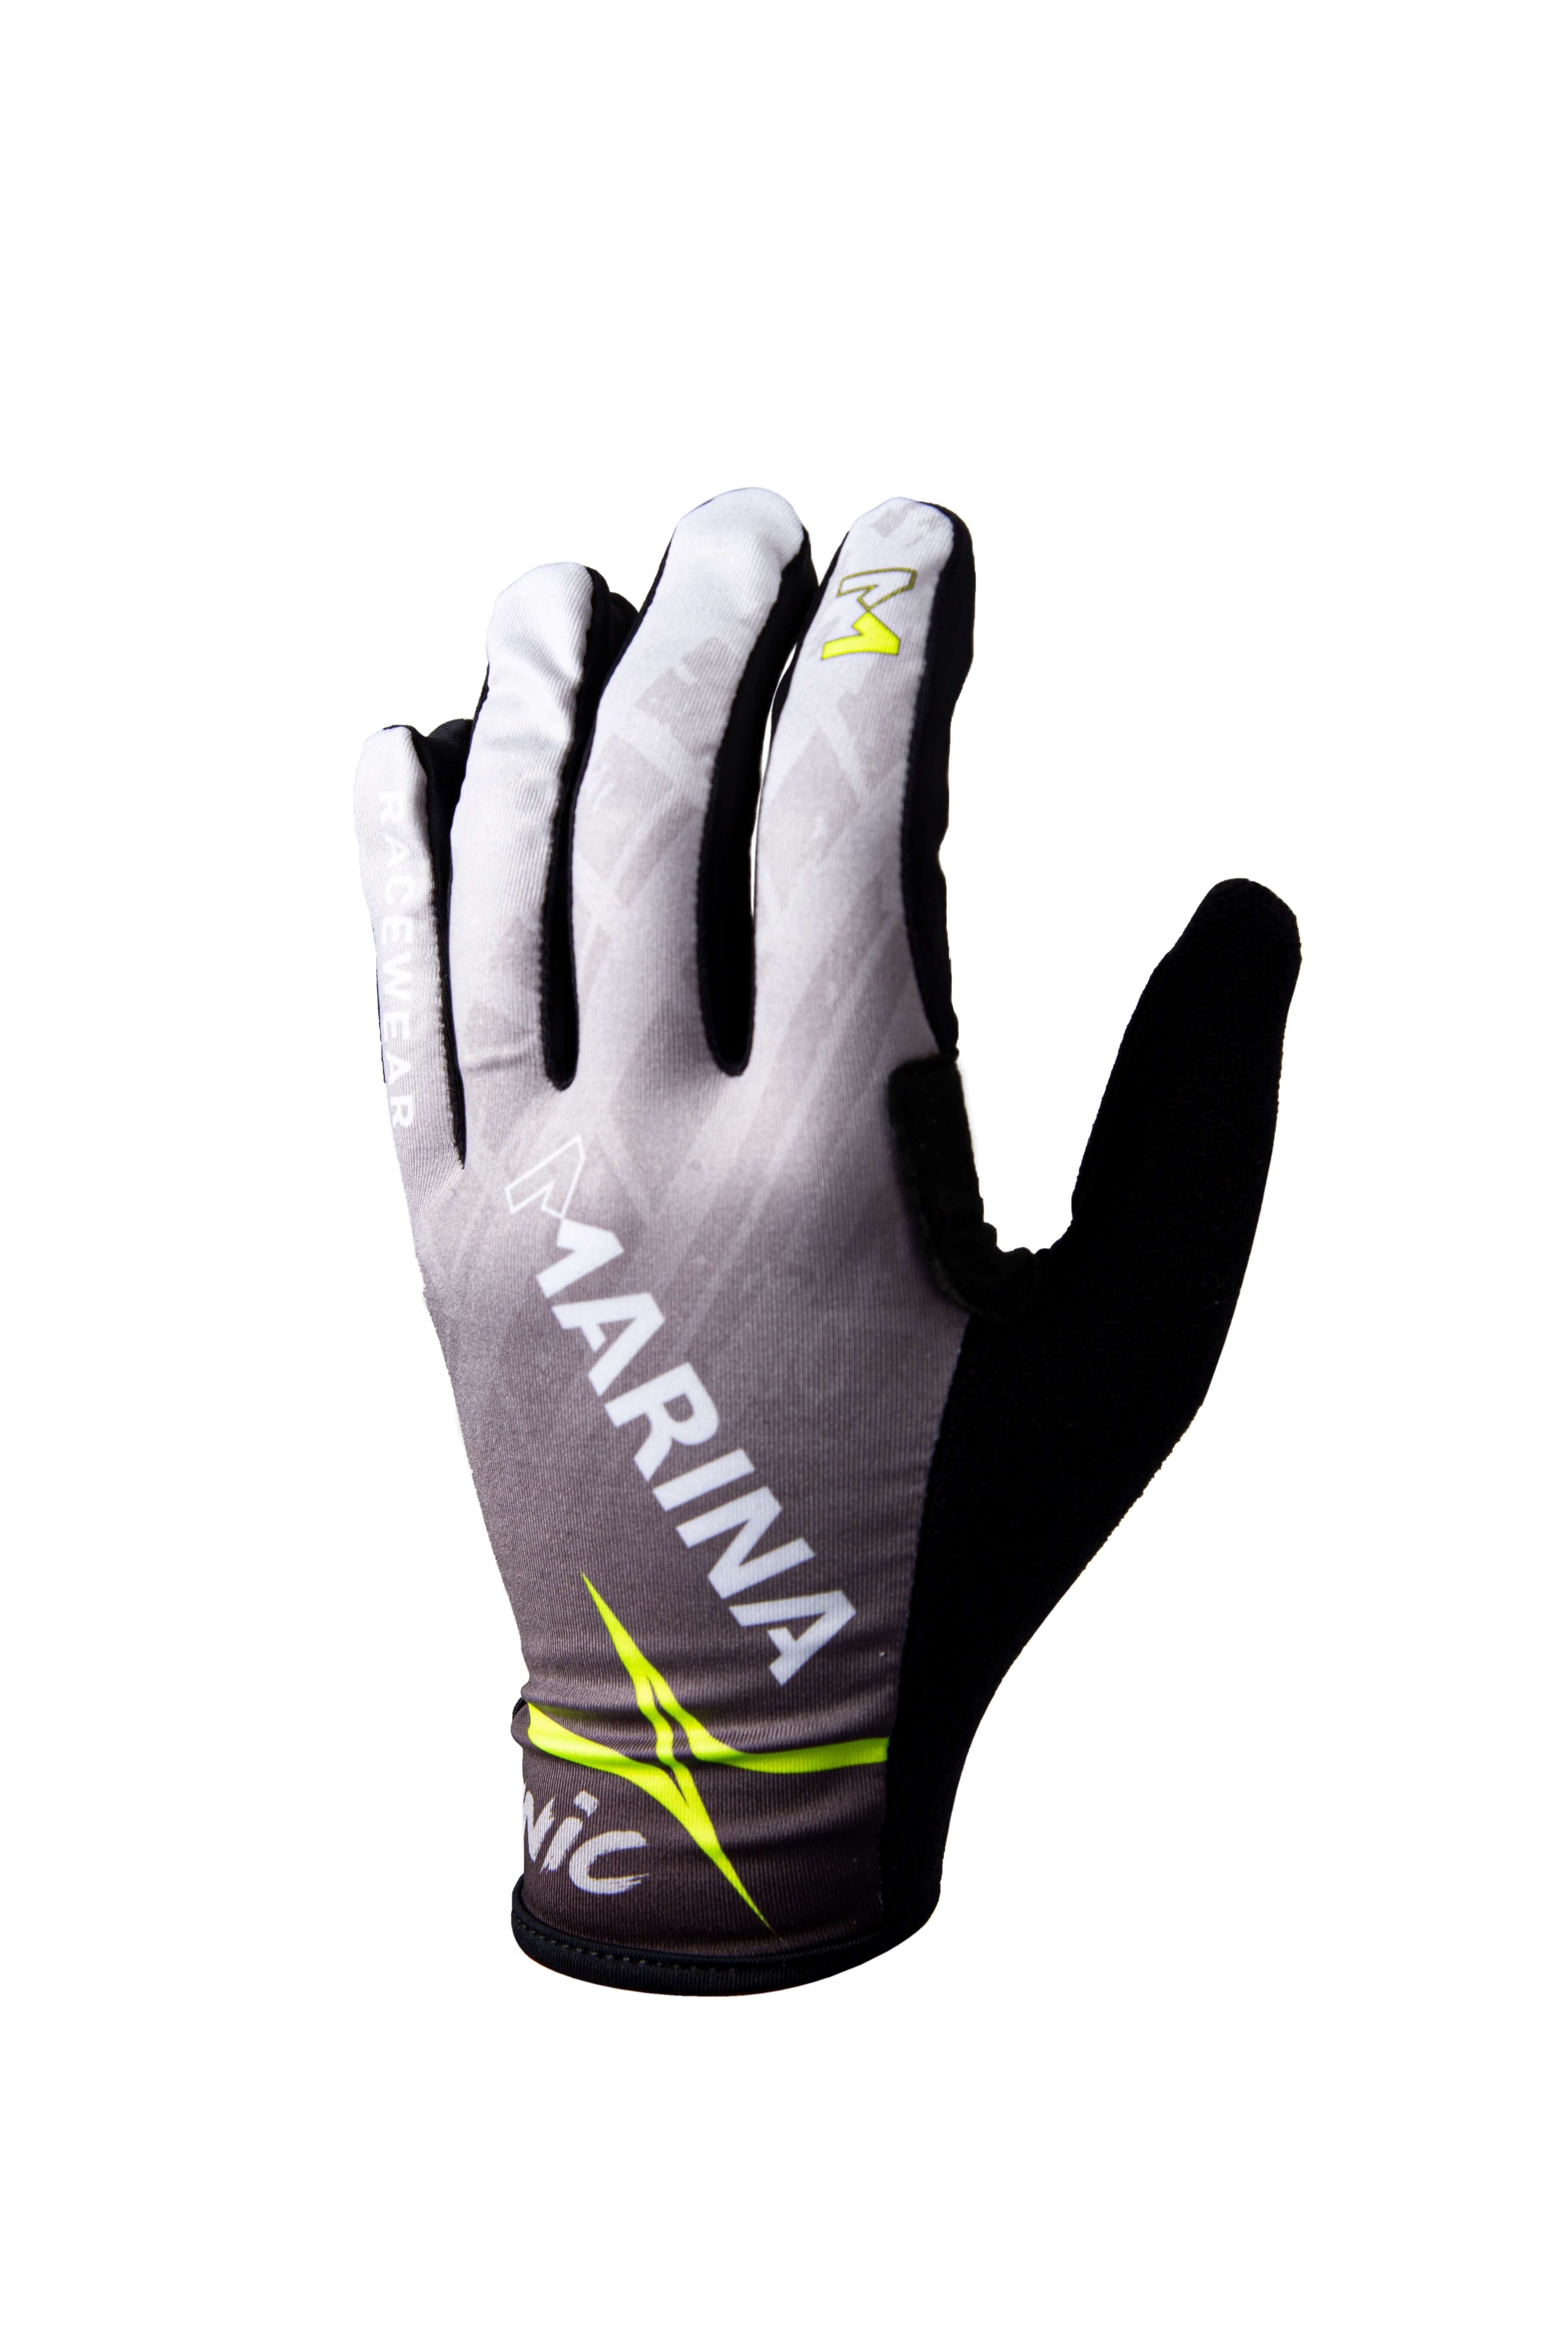 Gloves Sim Racing Grey - Marina Racewear